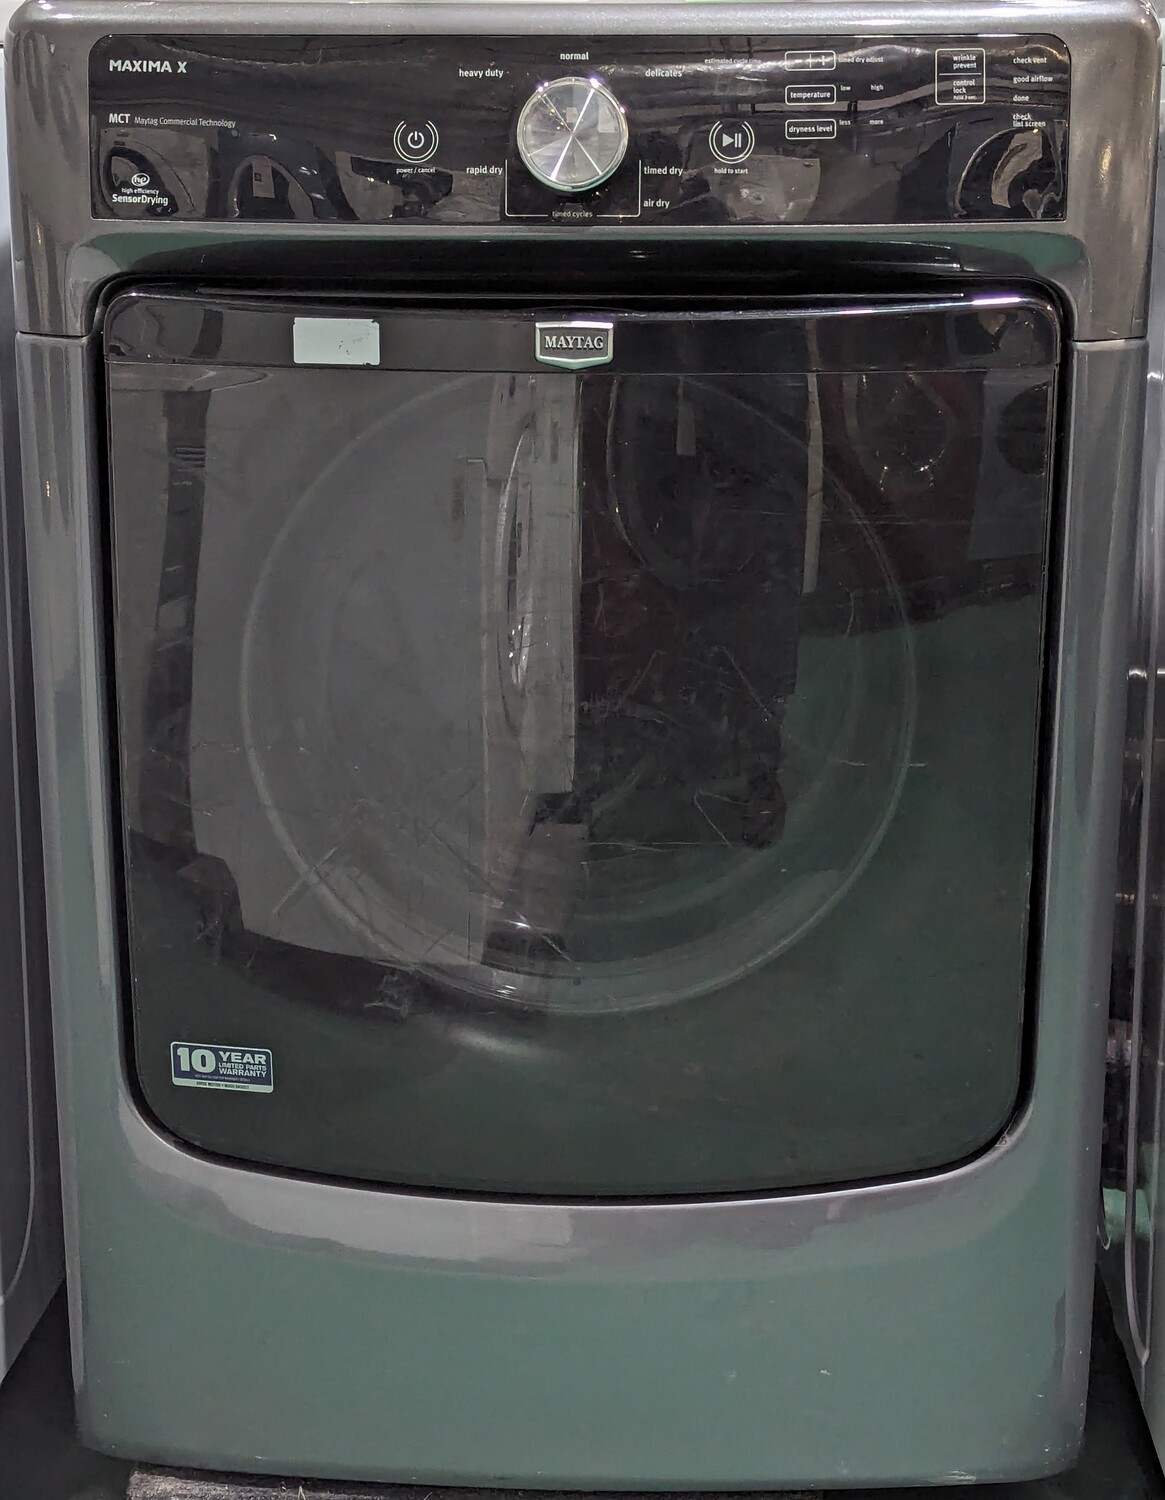 Maytag Maxima X Dryer YMED3000BG0